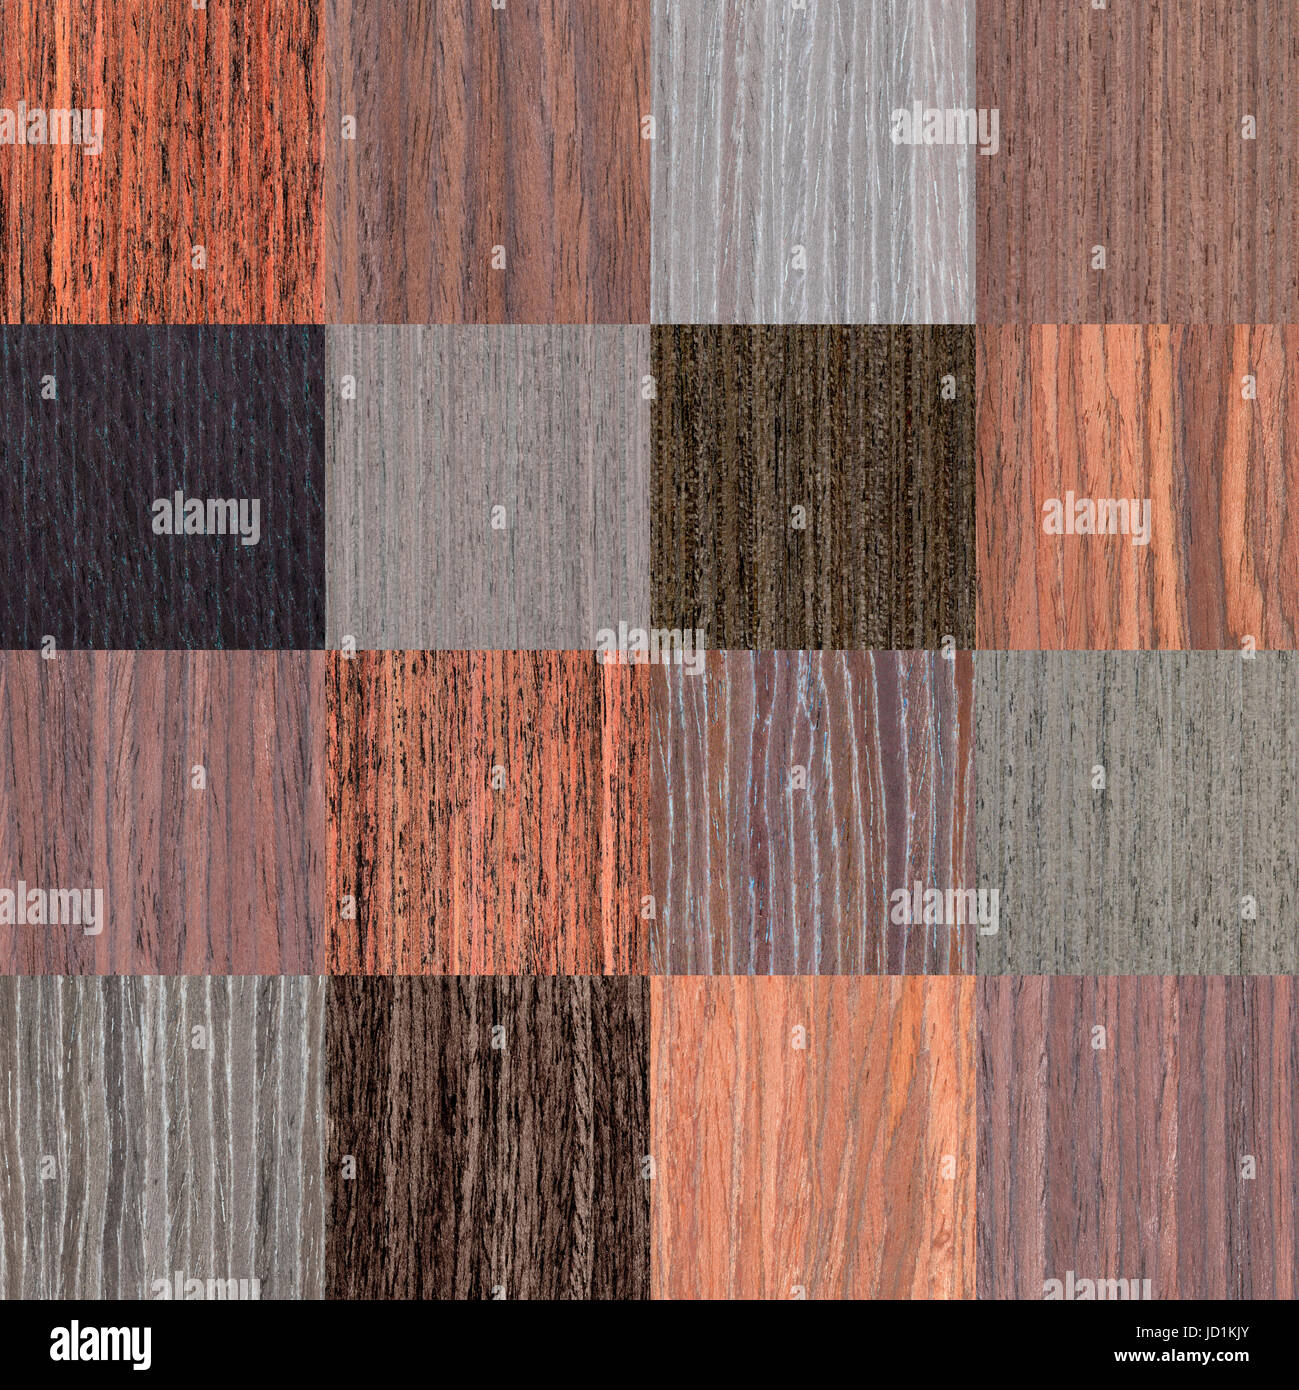 Einstellung der dunkle natürliche Holz Textur, Baum-Furnier-Hintergrund Stockfoto